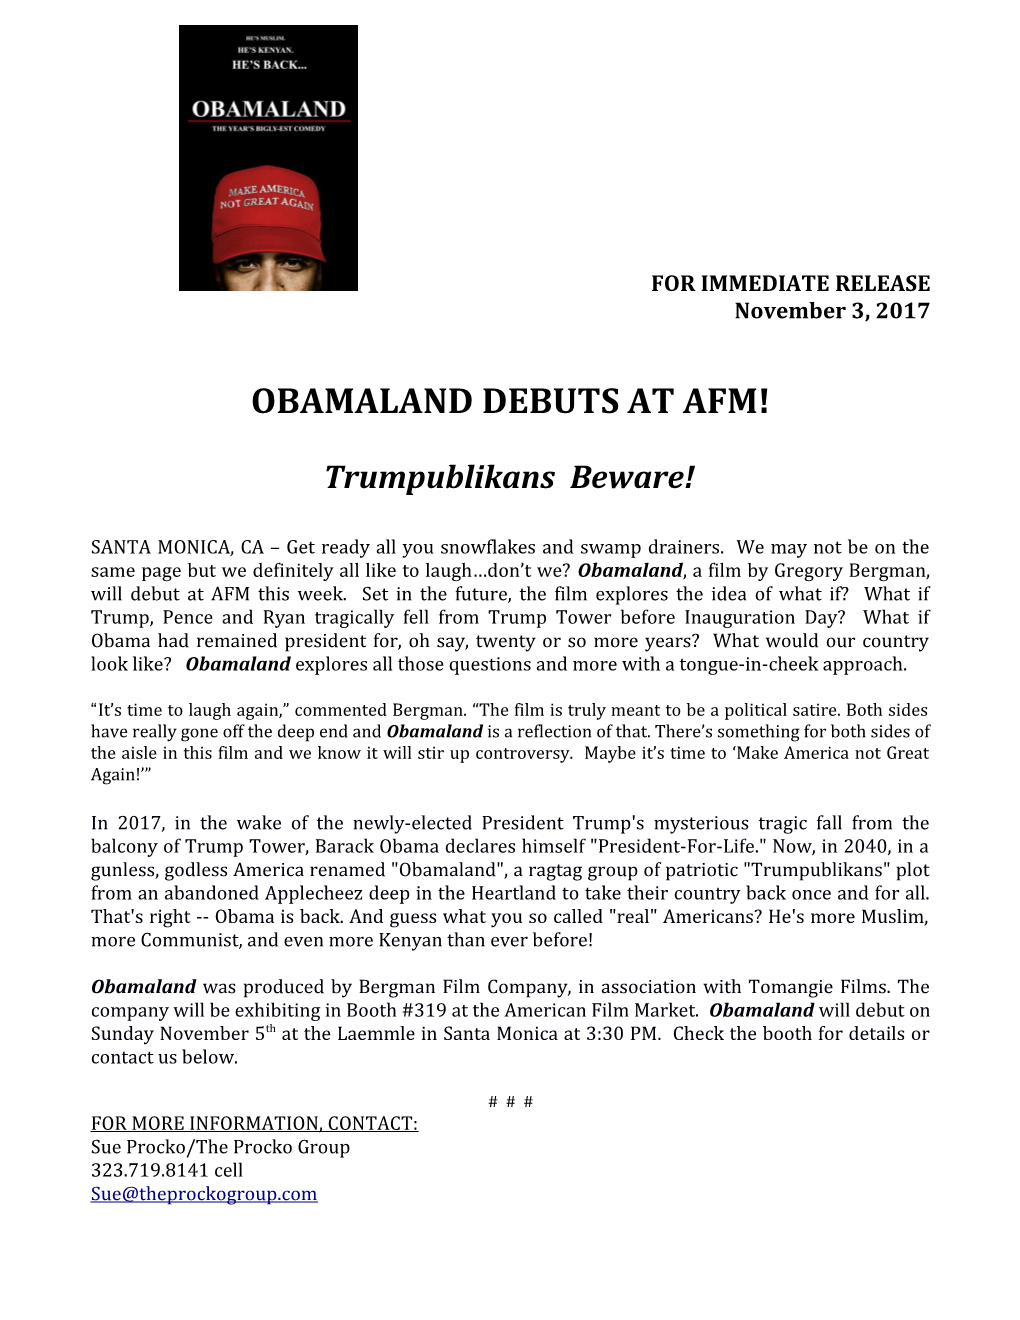 Obamaland Debuts at Afm!